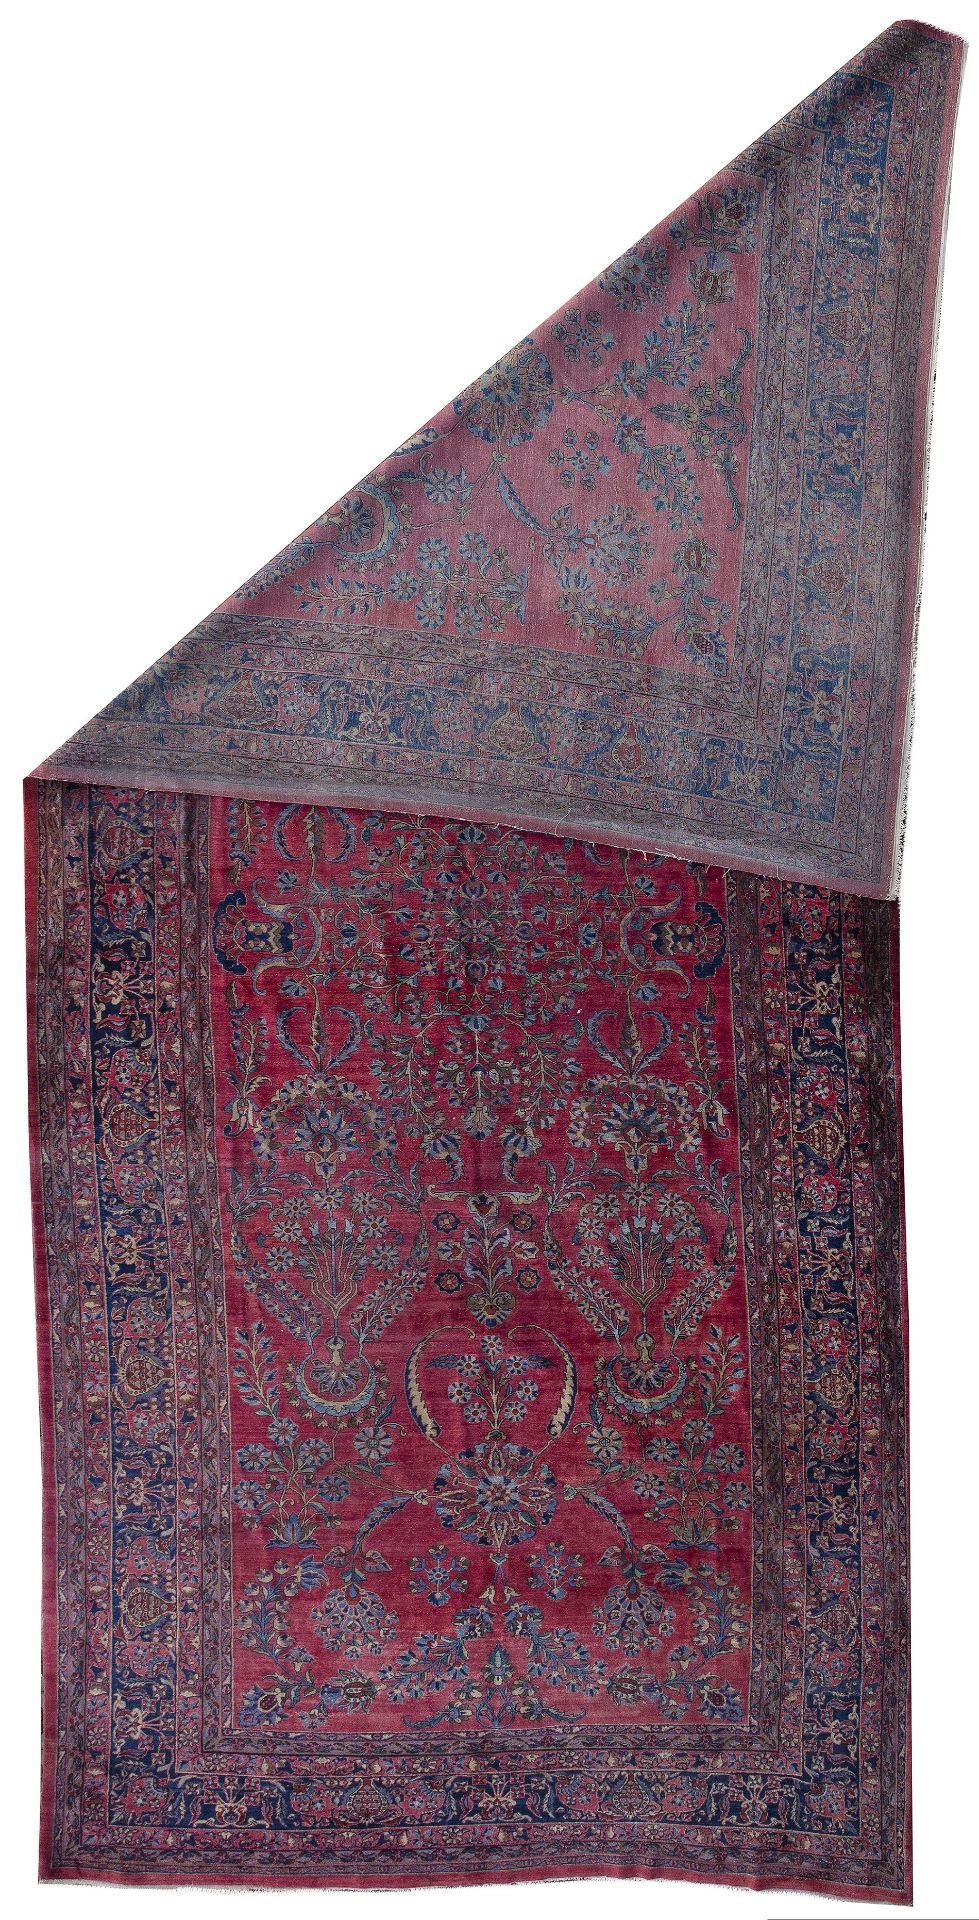 A PERSIAN SARUK CARPET, CIRCA 1930 - Image 2 of 2